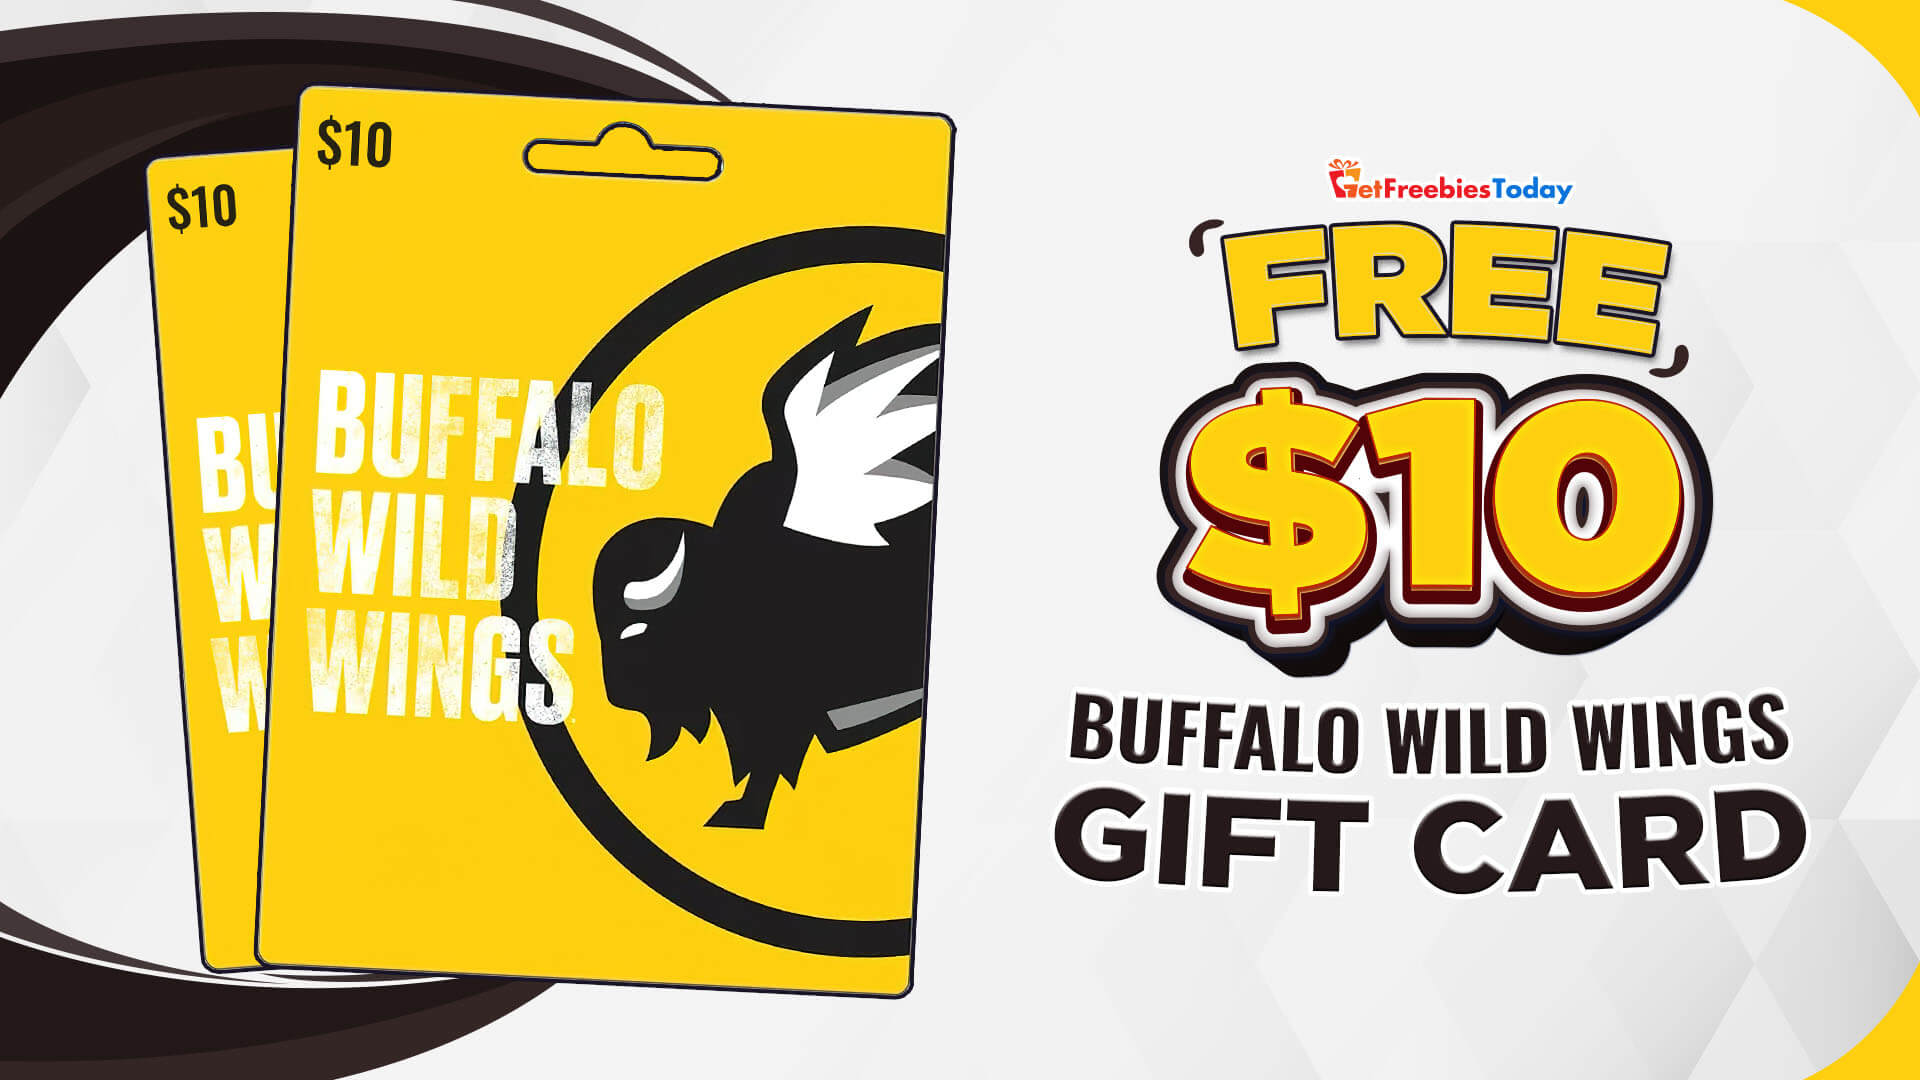 Free $10 Buffalo Wild Wings Gift Card | GetFreebiesToday.com